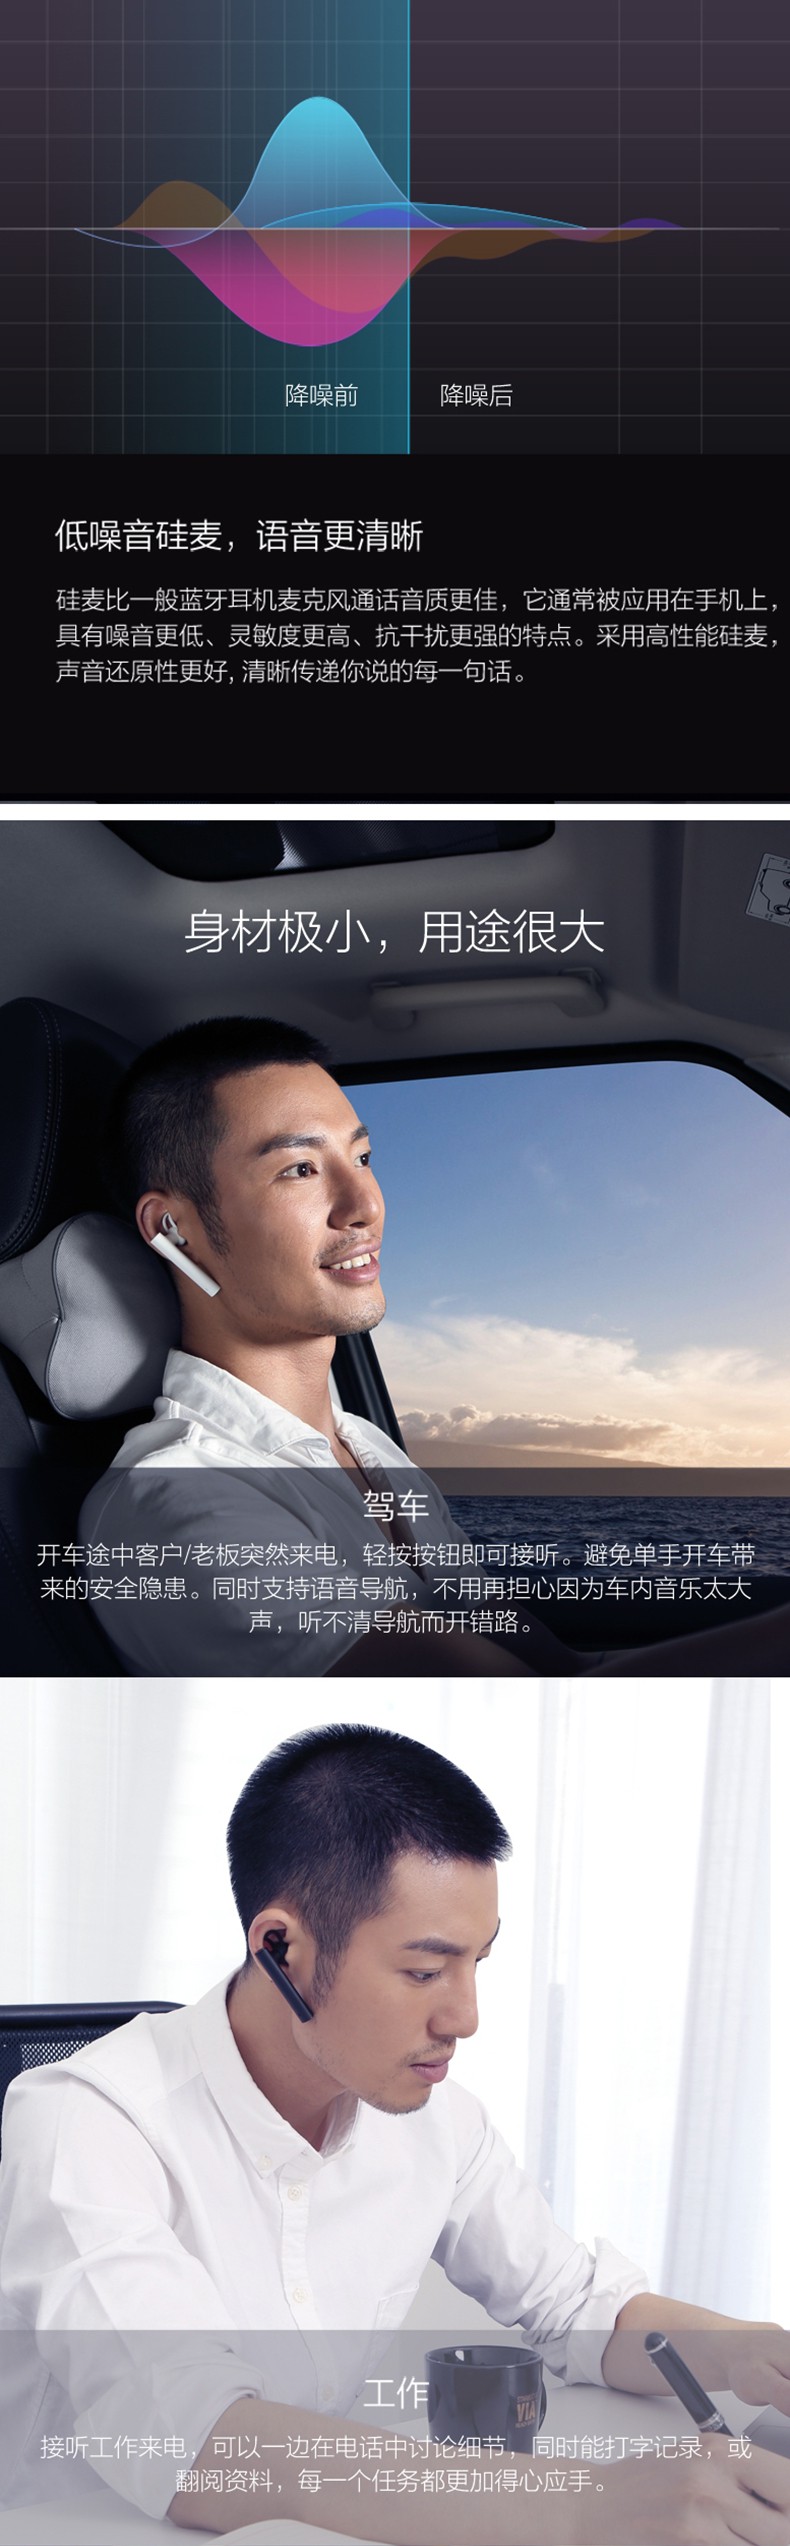 MI 小米蓝牙耳机 蓝牙4.1高清通话音质 兼容苹果6/5S